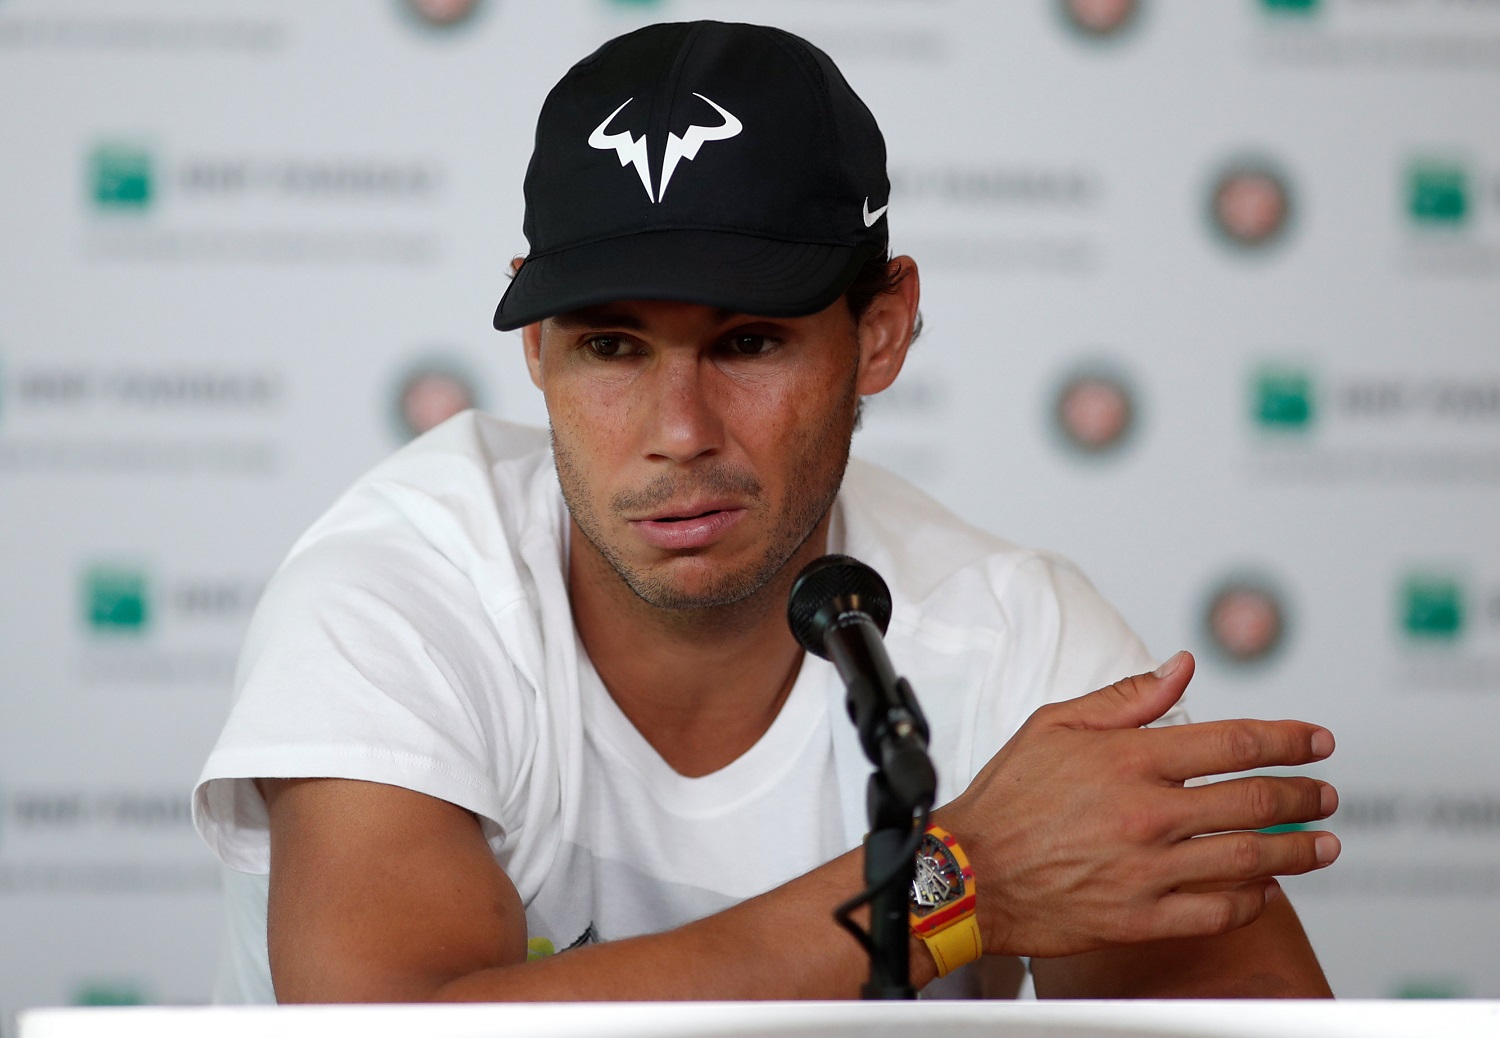 Nadal pasa a semifinales del Abierto de Francia tras retiro de Carreño